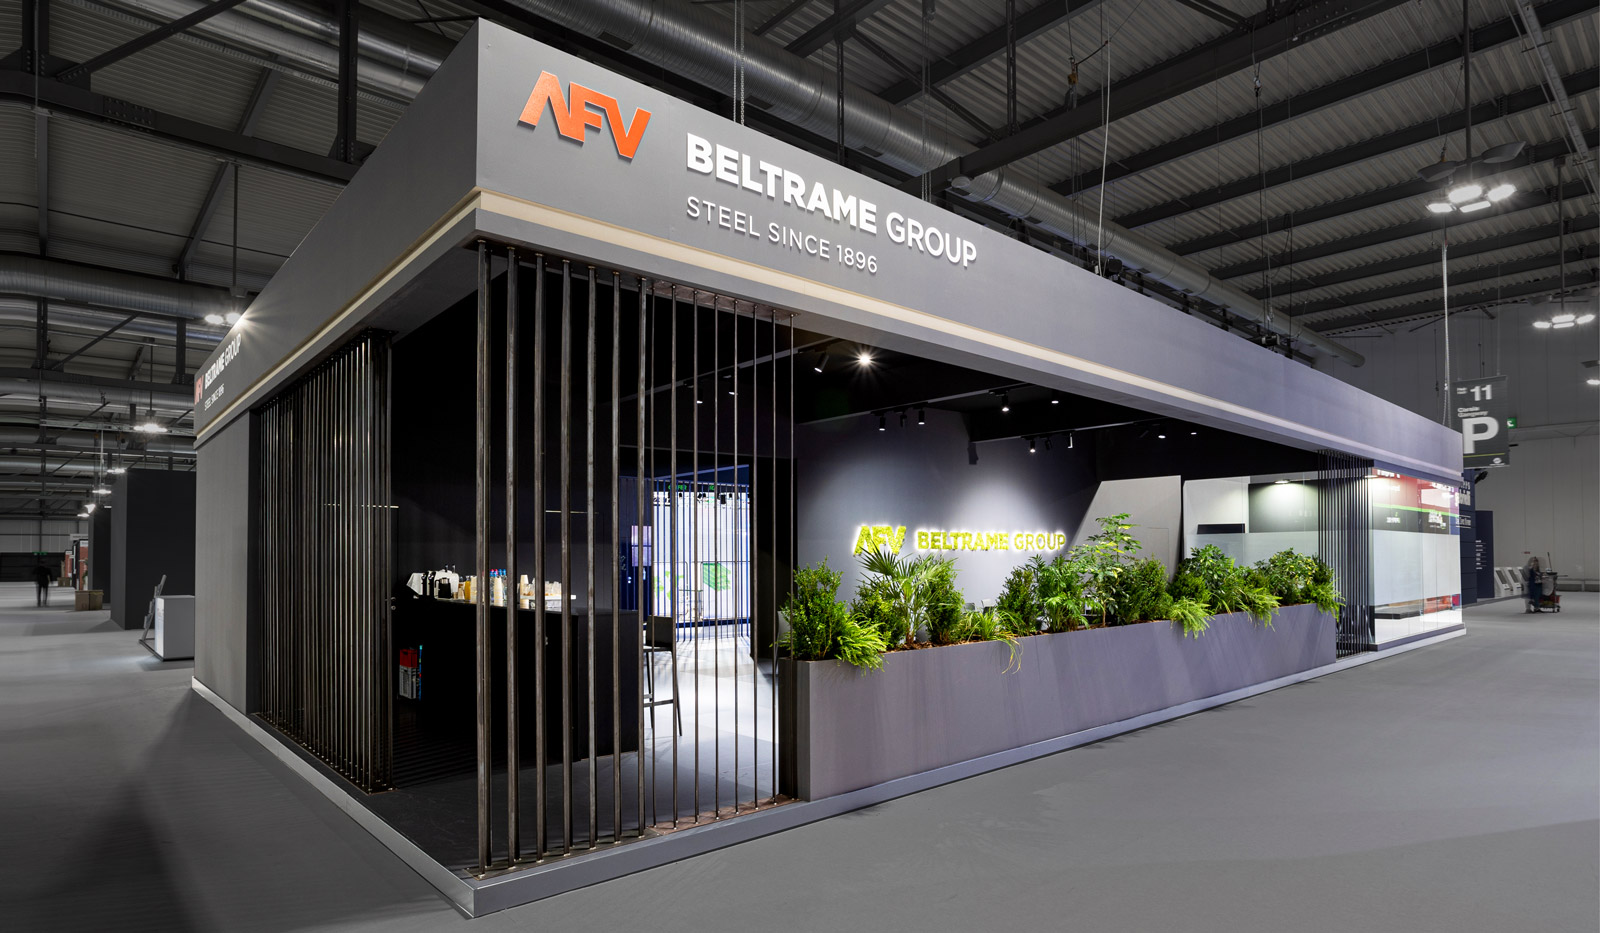 Afv Beltrame Group - Made In Steel 2021, Milano - foto n.02